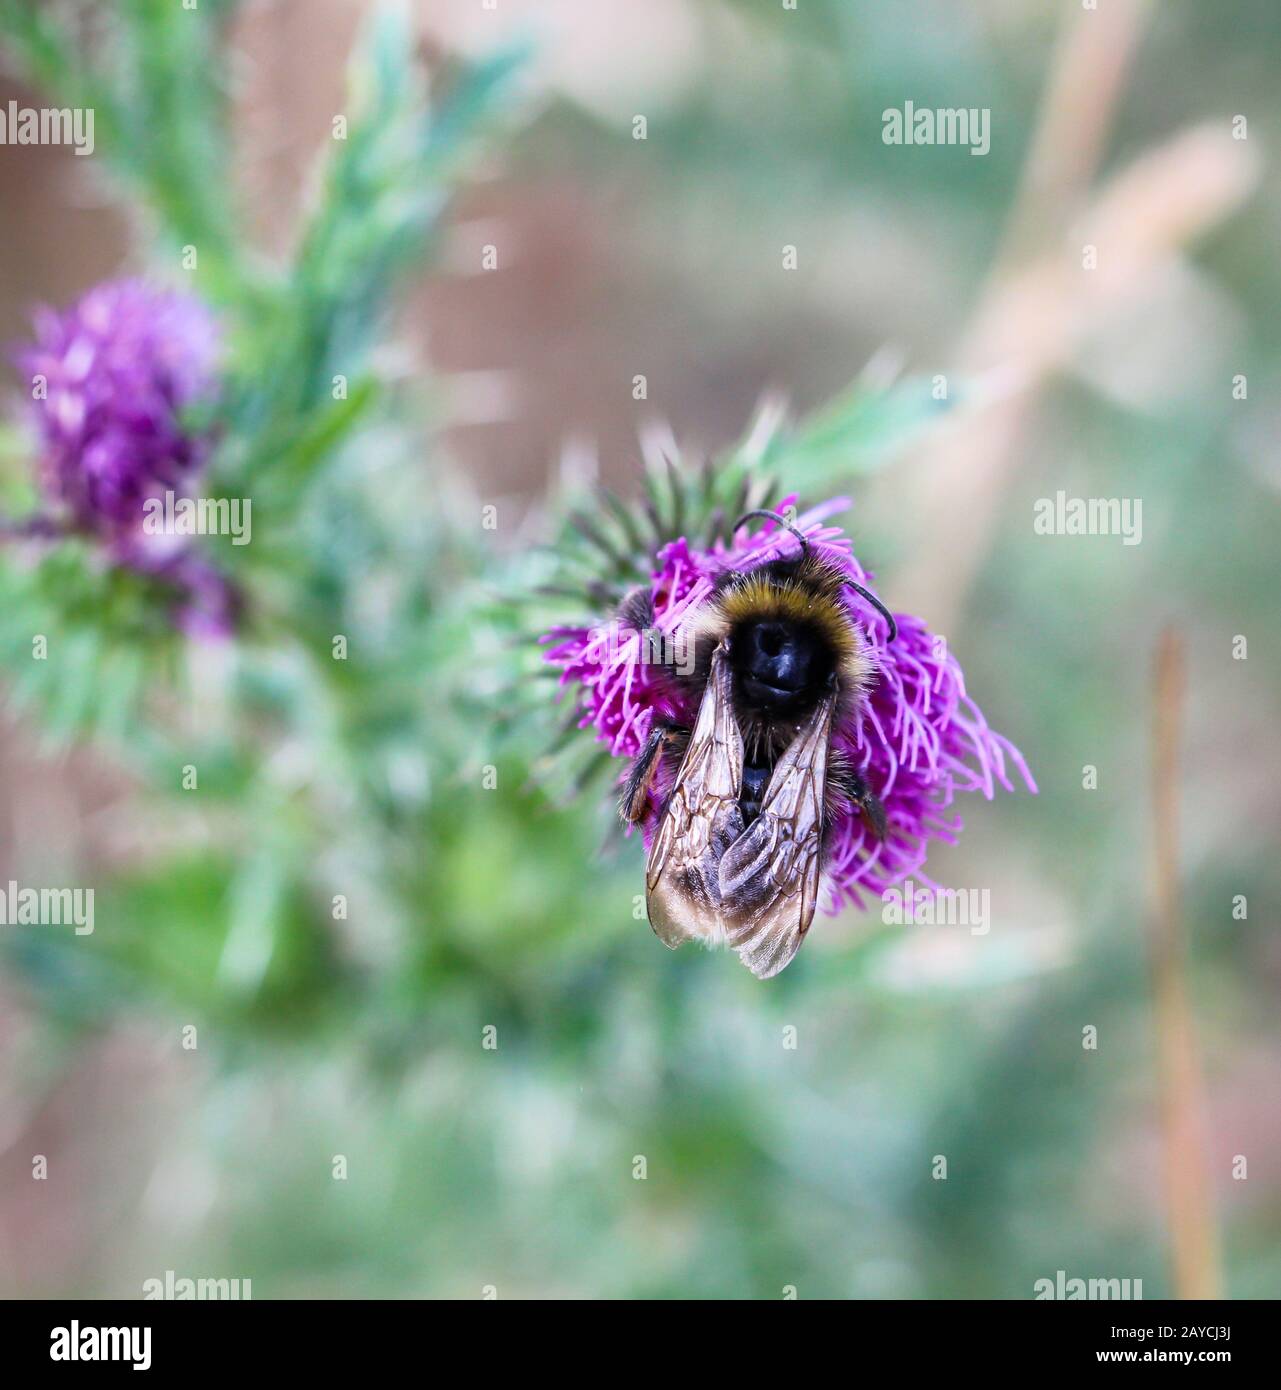 macro, primo piano di un'ape, bumblebee, insetto su una pianta Foto Stock